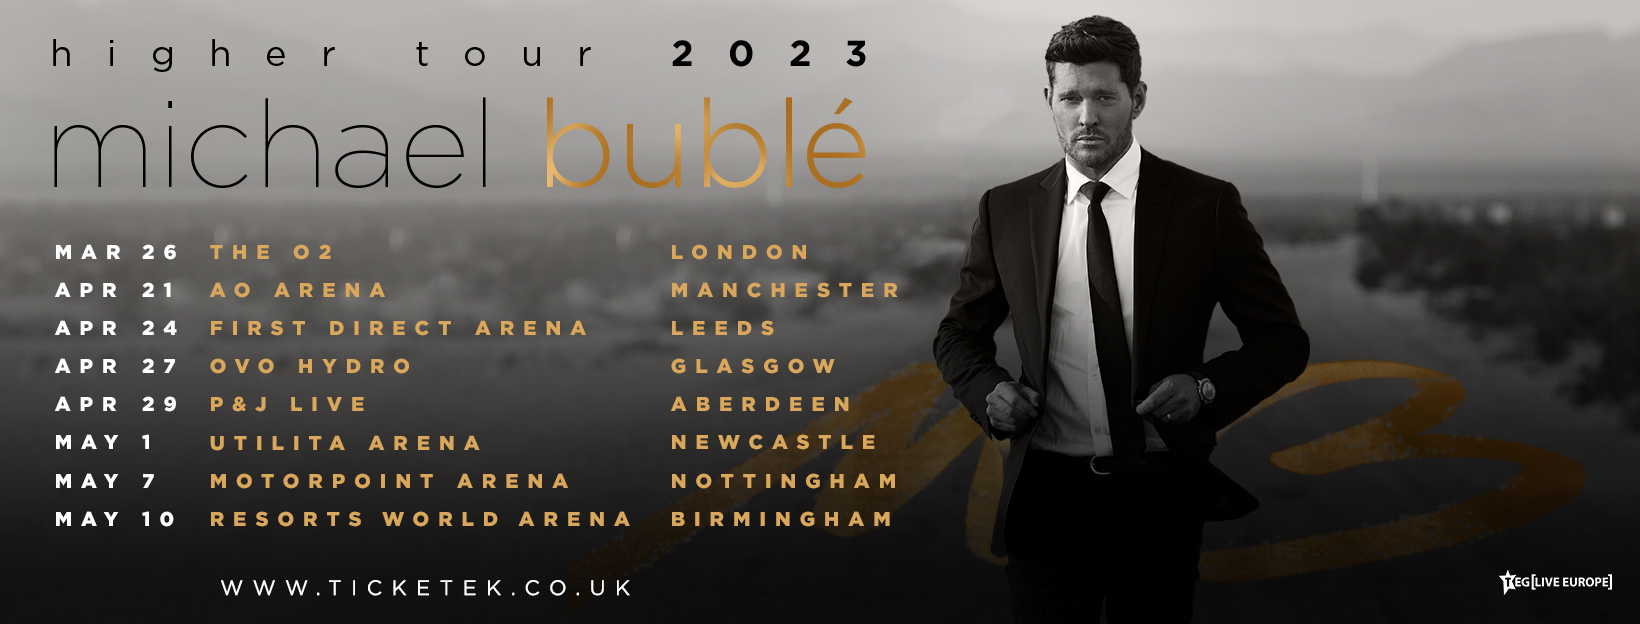 Michael Bublé Michael Tours UK & IE in 2023